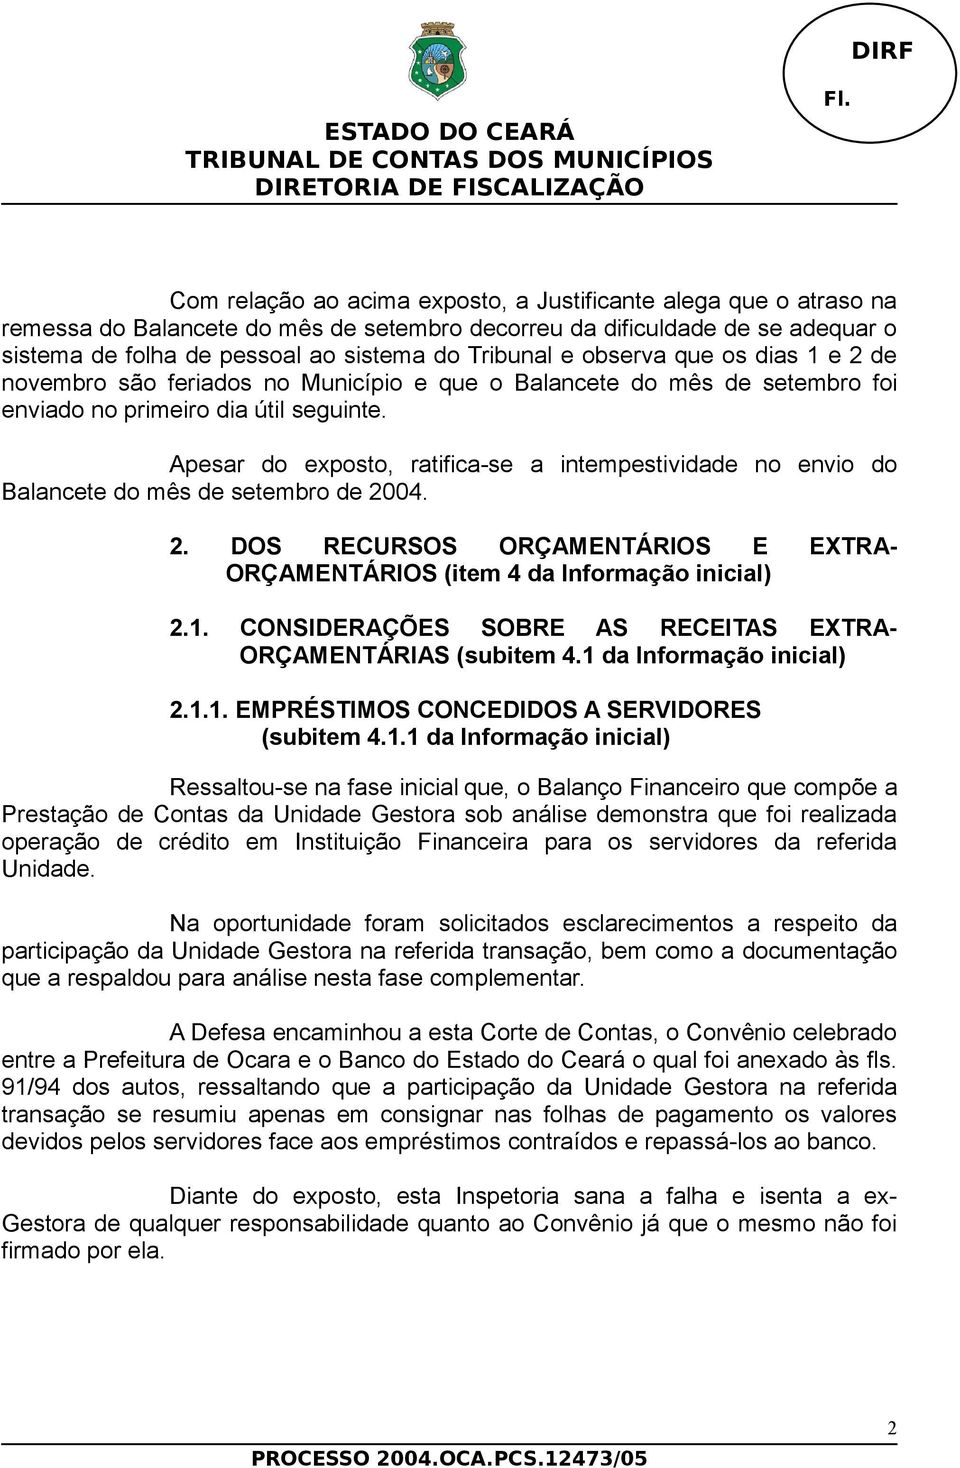 Apesar do exposto, ratifica-se a intempestividade no envio do Balancete do mês de setembro de 2004. 2. DOS RECURSOS ORÇAMENTÁRIOS E EXTRA- ORÇAMENTÁRIOS (item 4 da Informação inicial) 2.1.